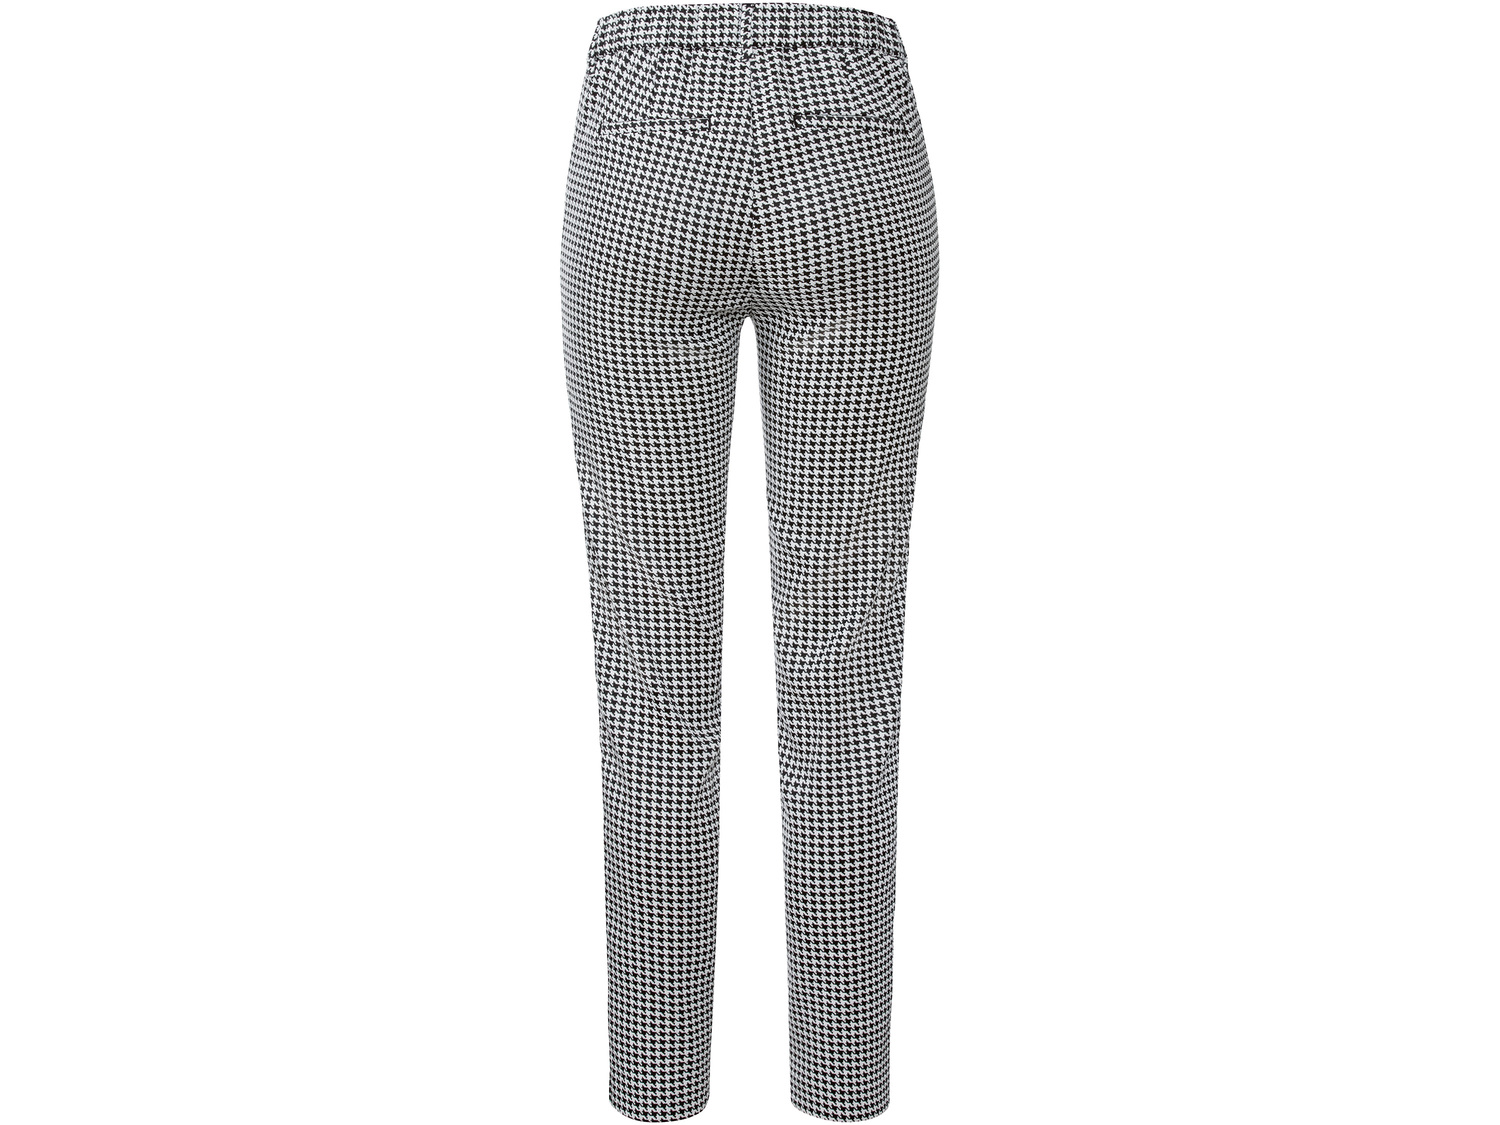 Spodnie damskie Esmara, cena 39,99 PLN 
- rozmiary: 36-44
- klasyczny kr&oacute;j ...